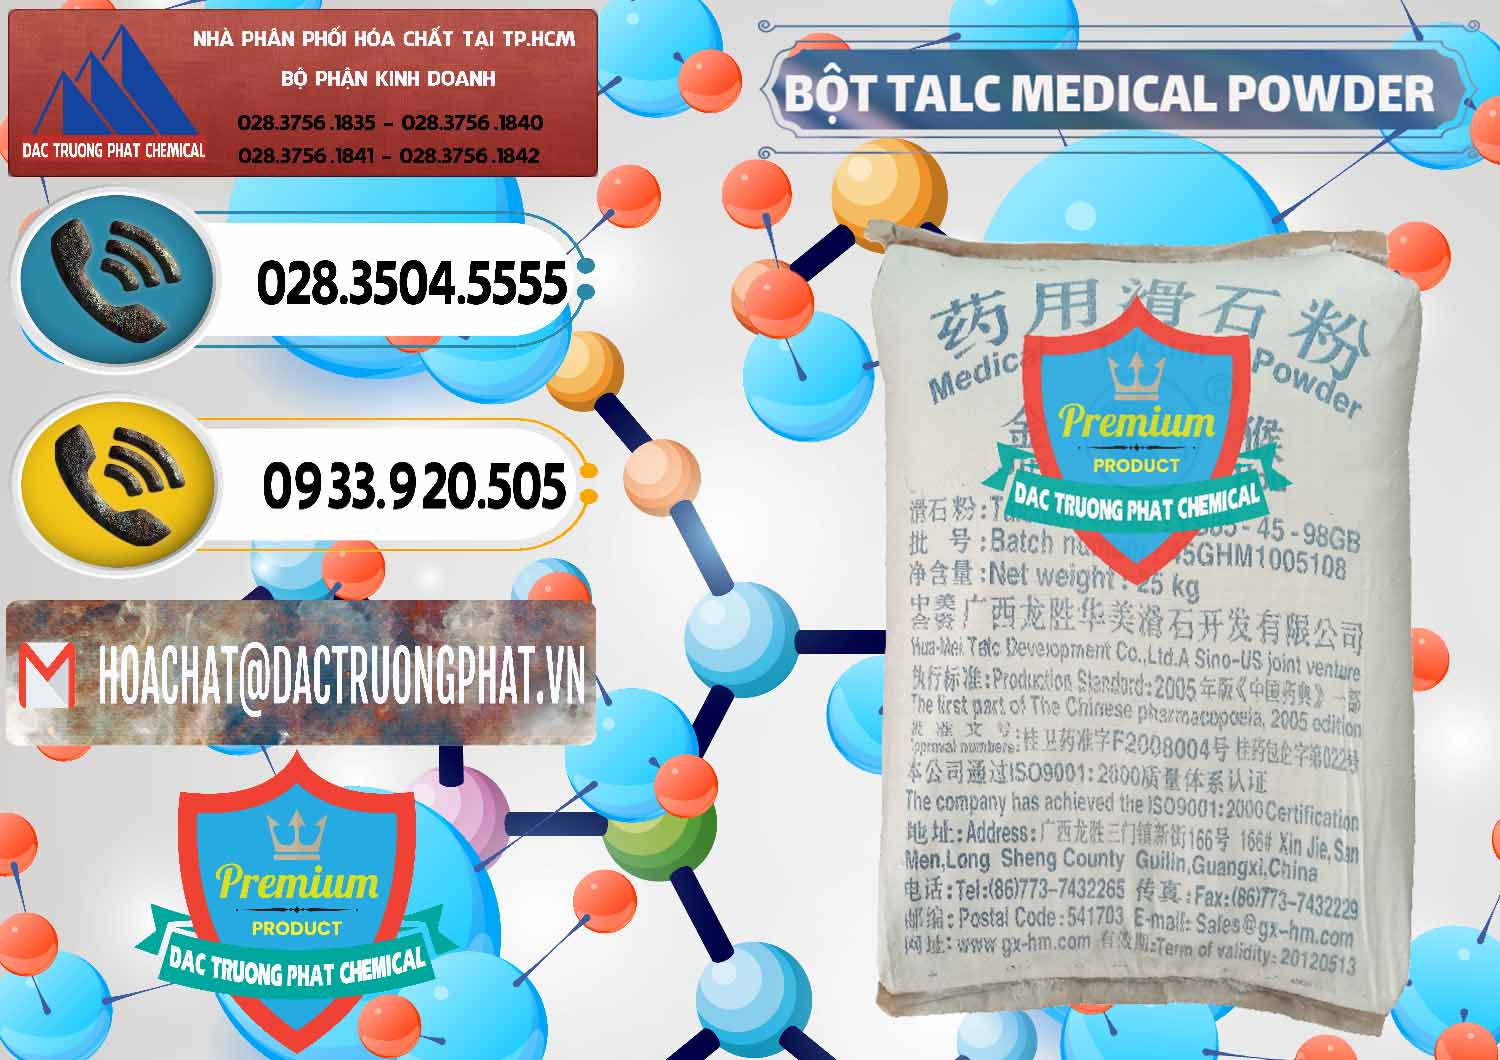 Phân phối & bán Bột Talc Medical Powder Trung Quốc China - 0036 - Nơi nhập khẩu & cung cấp hóa chất tại TP.HCM - hoachatdetnhuom.vn